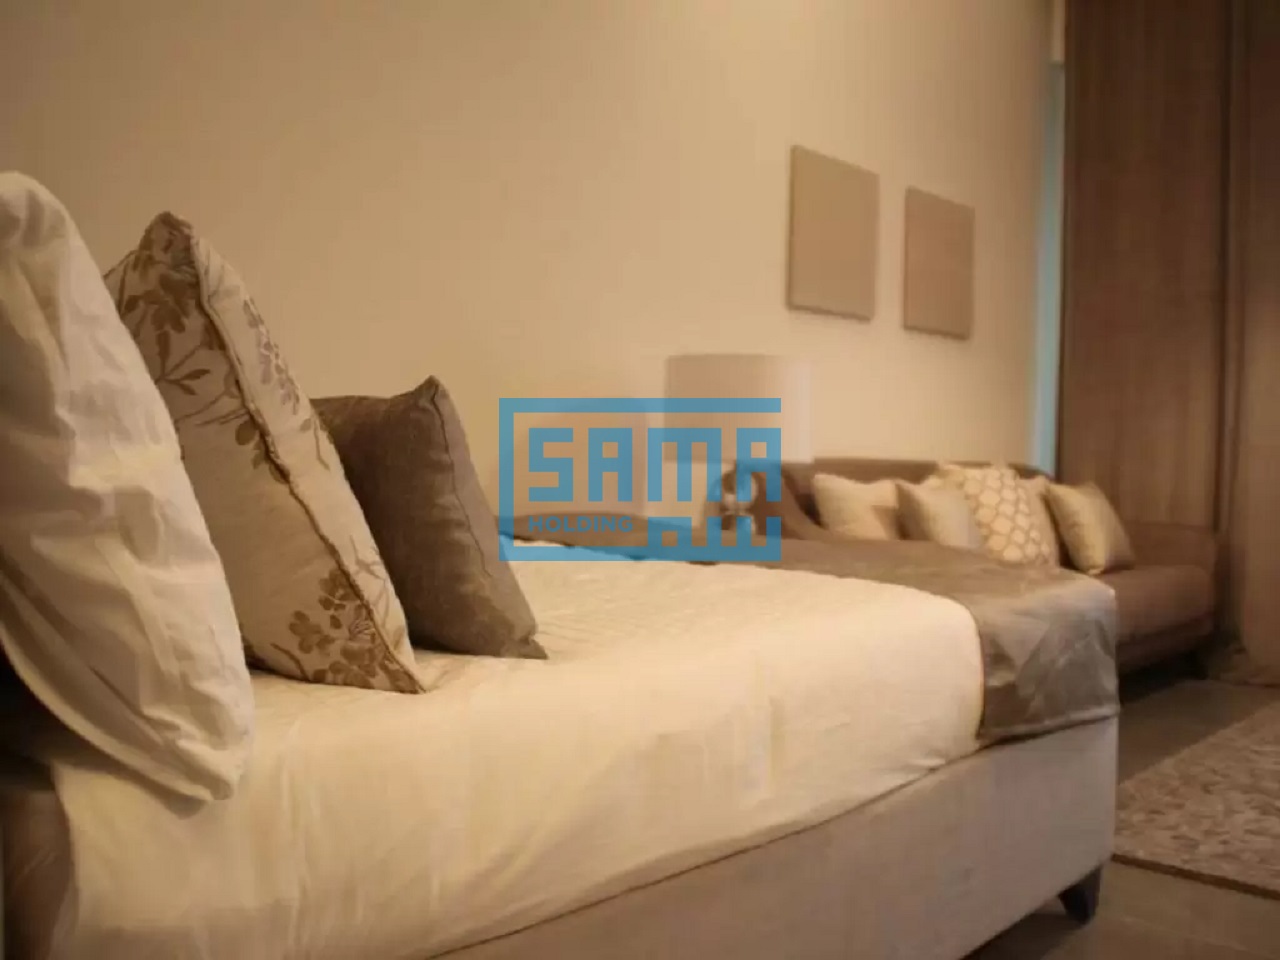 One Bedroom Residential Apartment for RENT in Abu Dhabi, Leonardo Residence